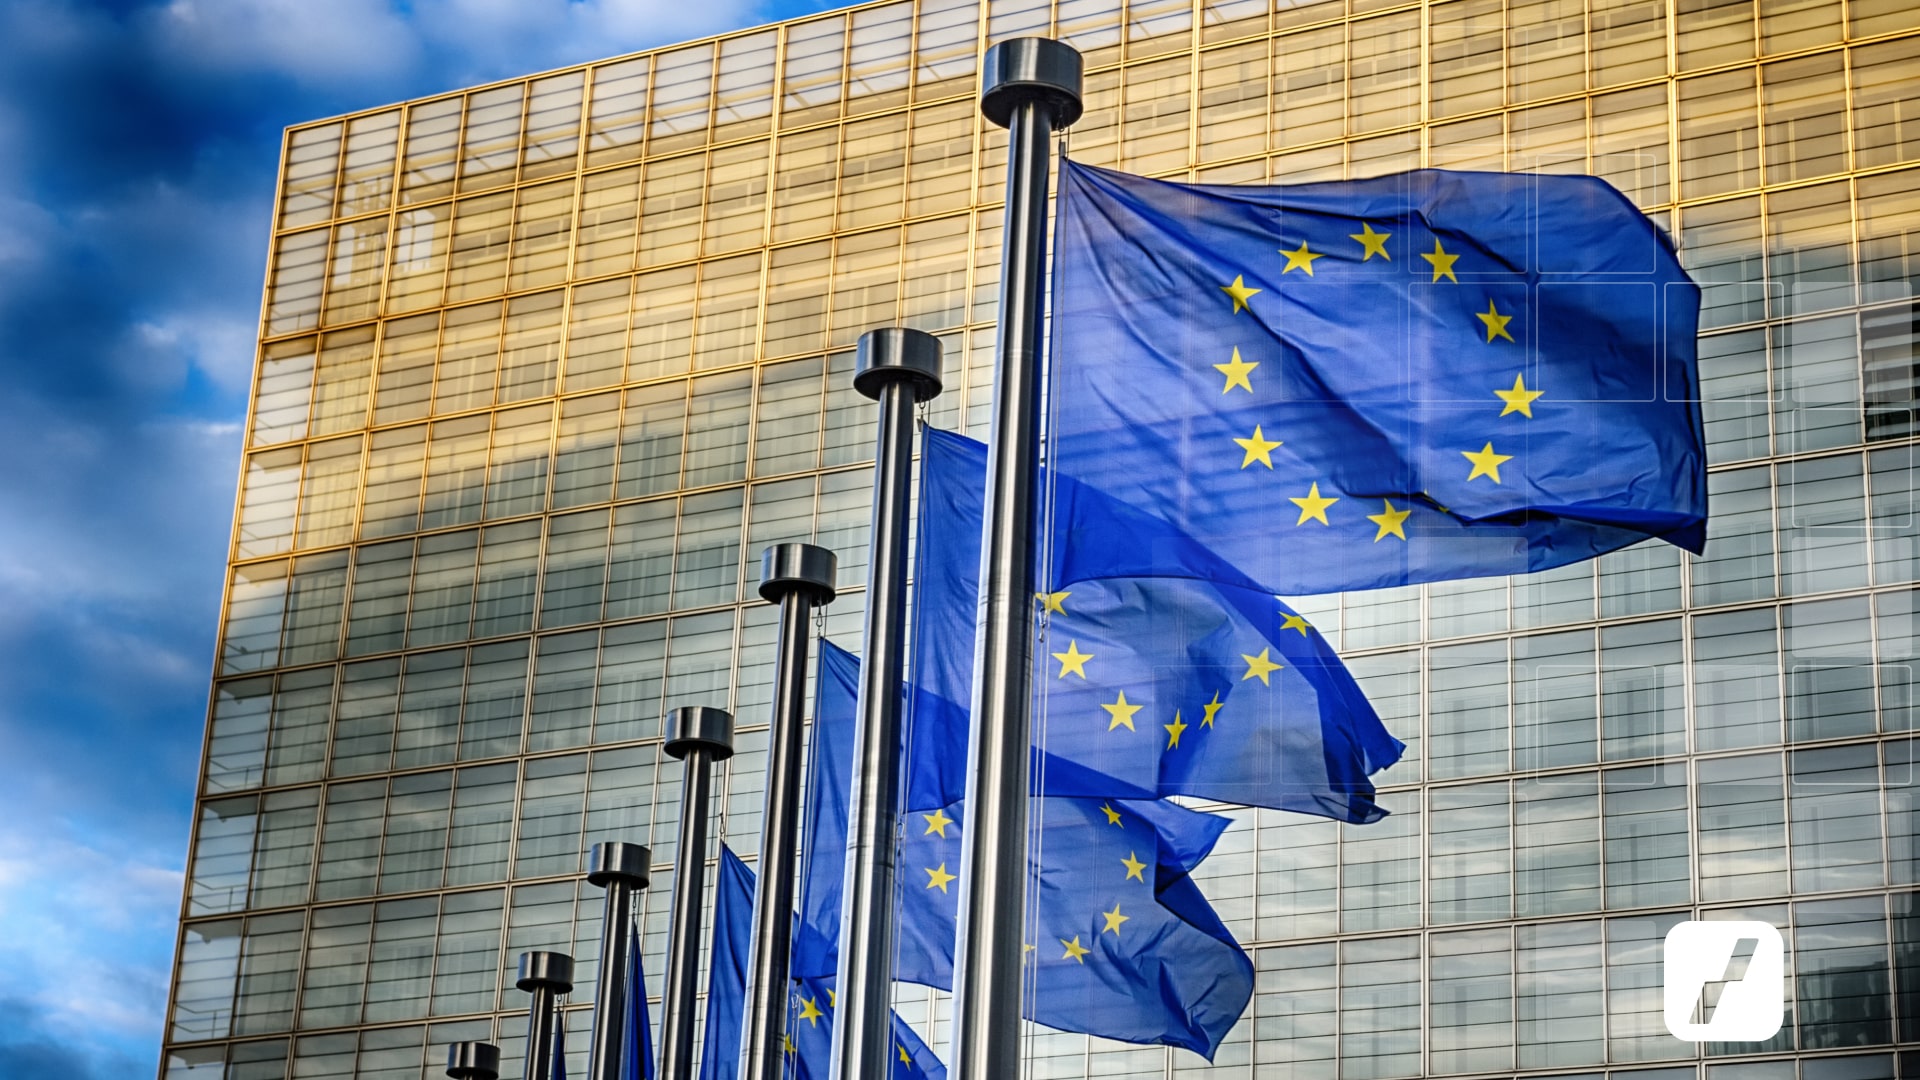 Evropská unie vlajky - vlasjka EU. makro